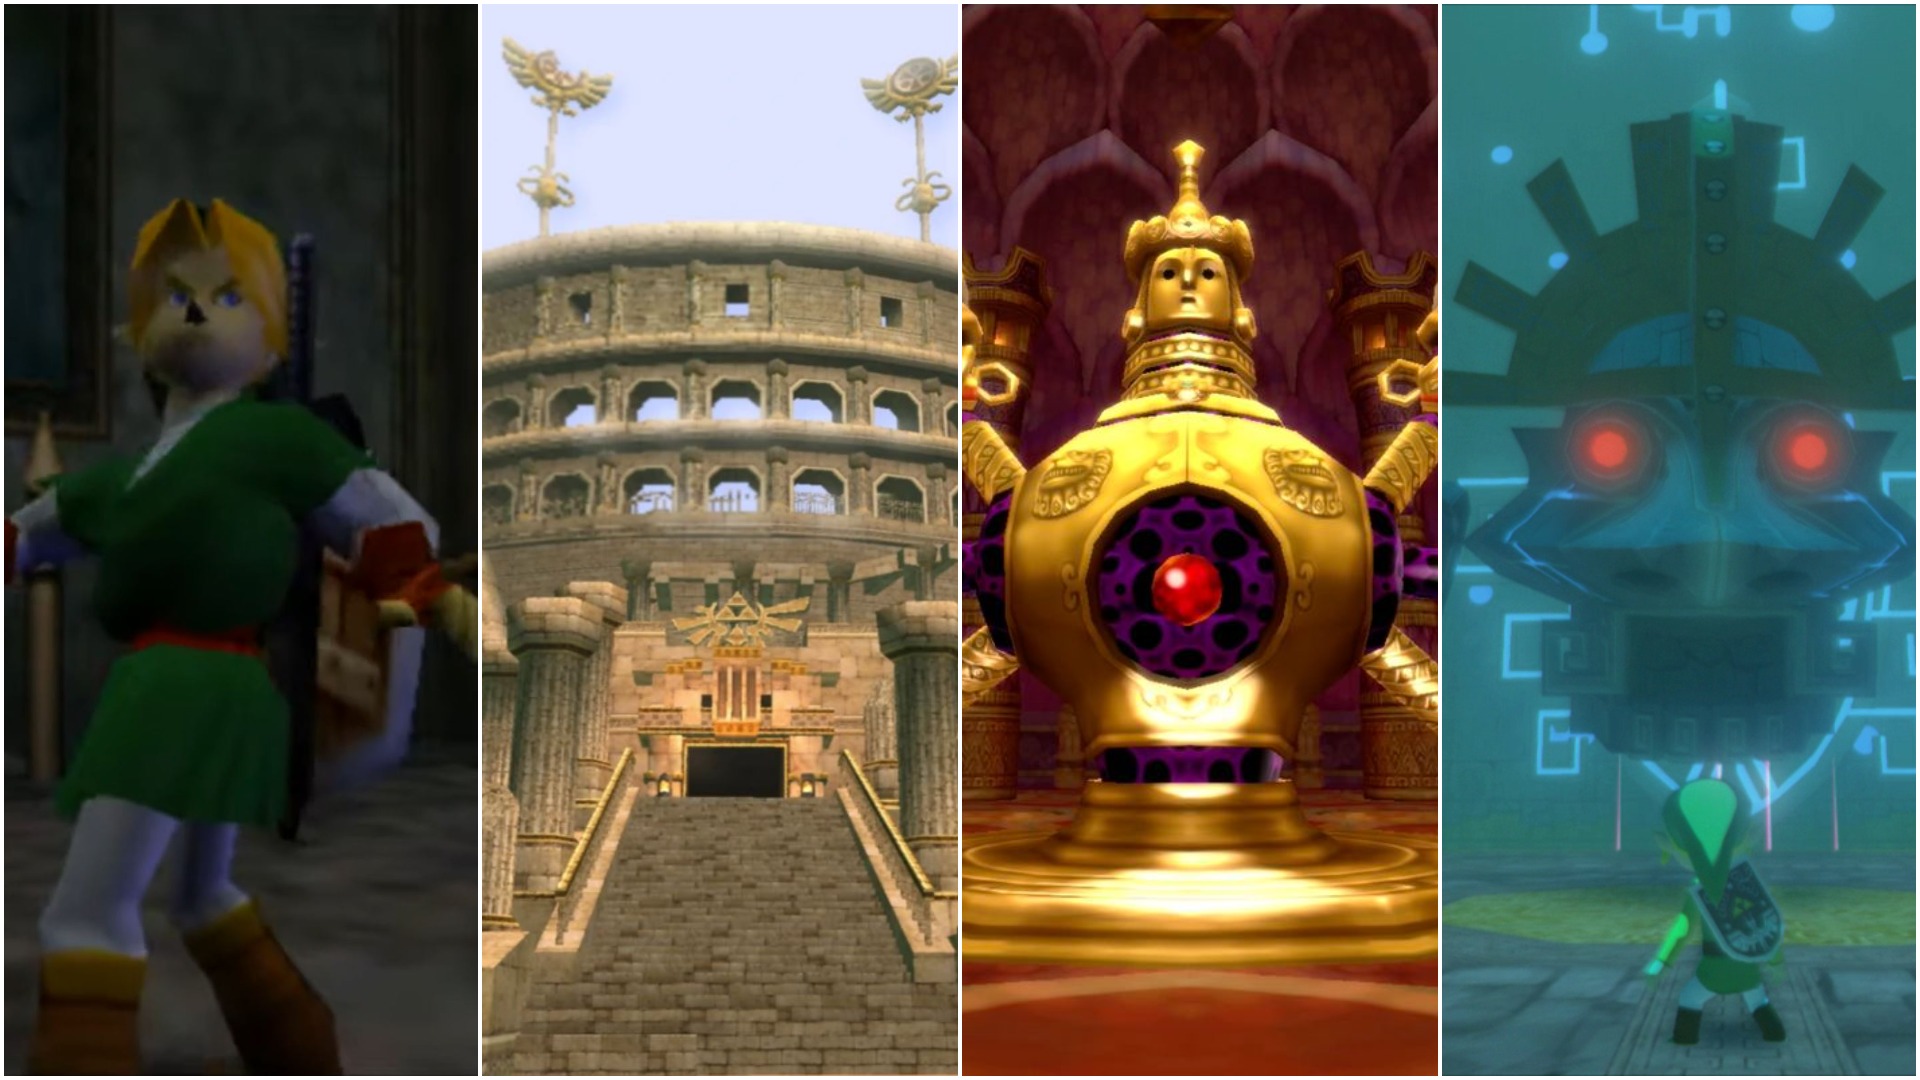 15 Best Legend of Zelda Dungeons Ever